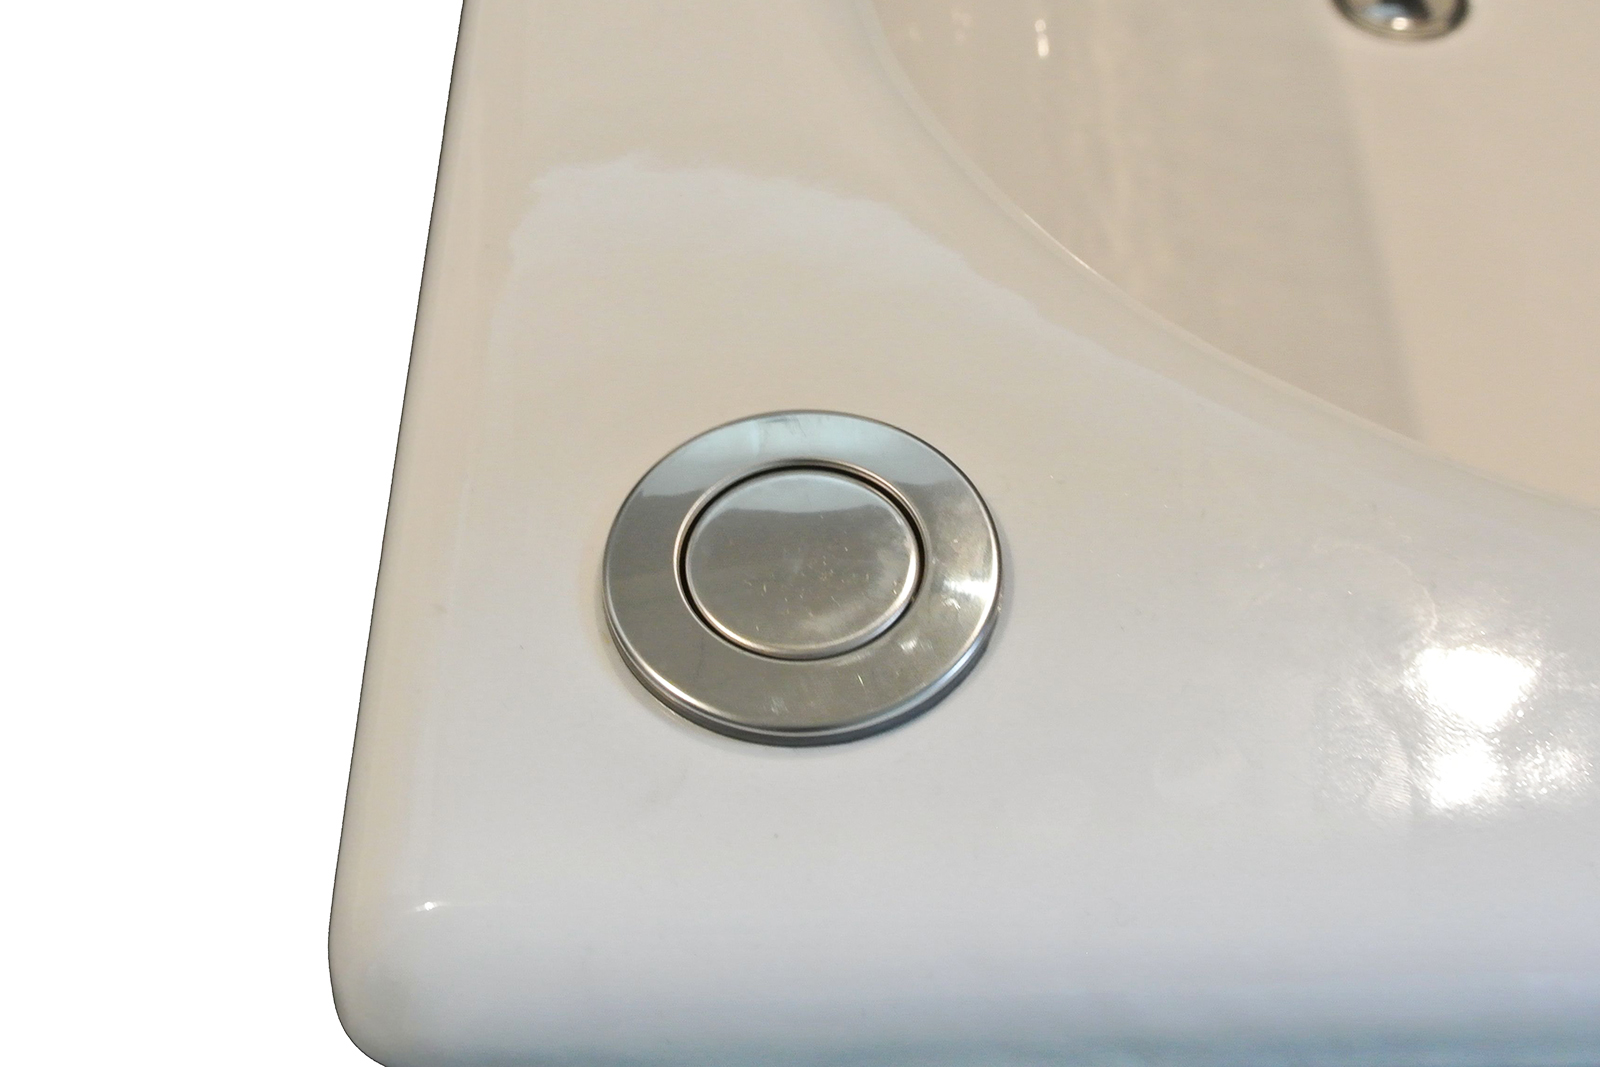 鋳物ホーロー浴槽 1272 スタンドタイプ KB-BT004-04-G122 ワンプッシュ排水栓。浴槽の設置位置によって「左向き」か「右向き」かをご選択ください